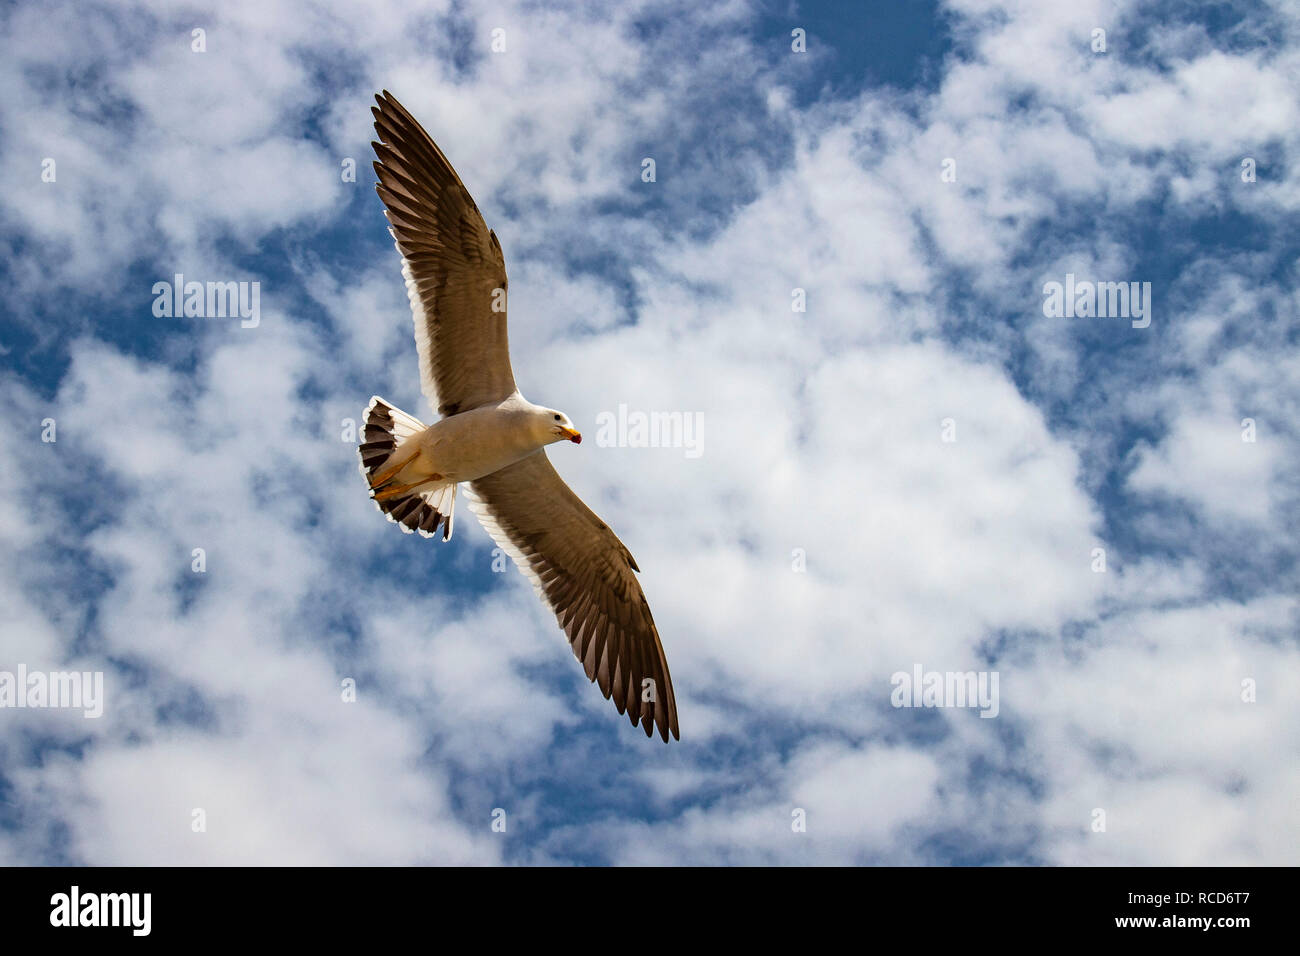 Les oiseaux migrateurs dans la réserve naturelle de Paracas, Ica, Pérou Banque D'Images